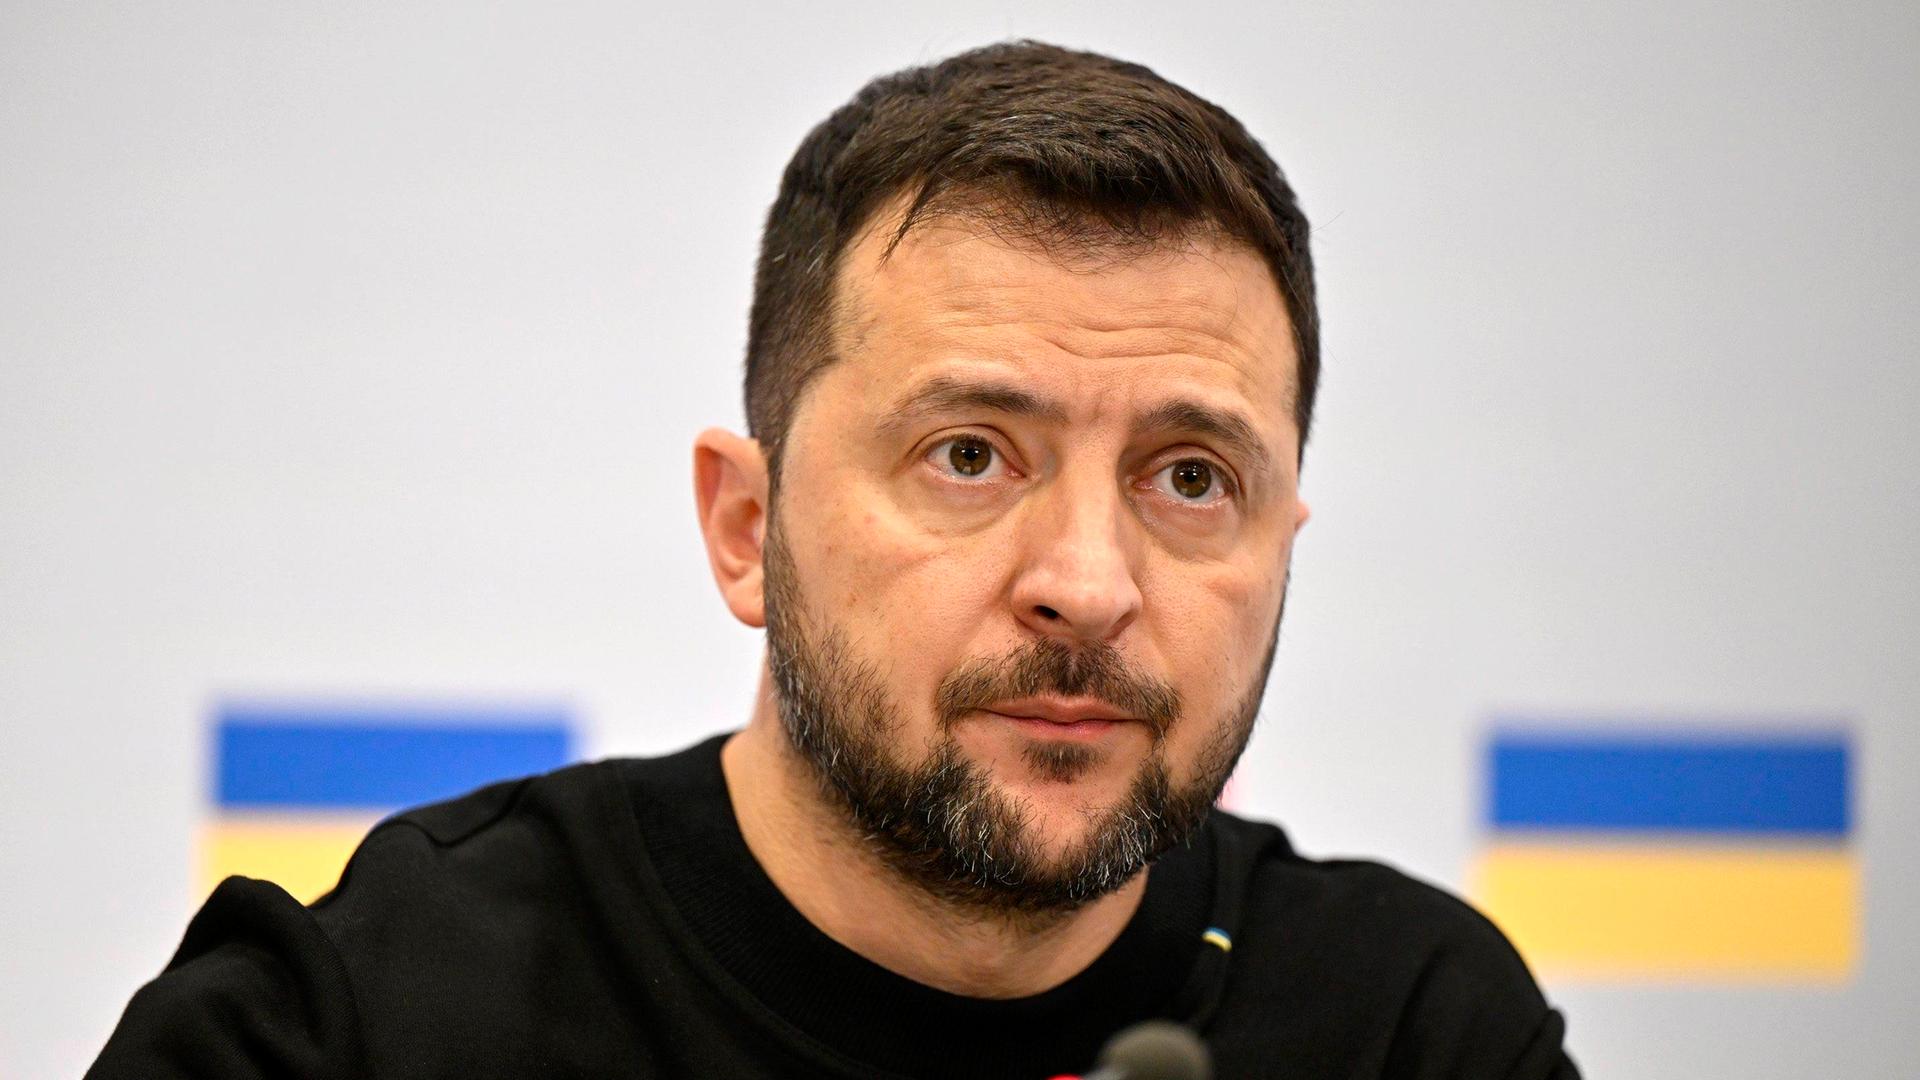 Das Bild zeigt den Oberkörper Selenskys im schwarzen Shirt vor einer weißen Wand mit zwei aufgedruckten ukrainische Flaggen. Er schaut ernst, vor ihm ein Mikrofon.